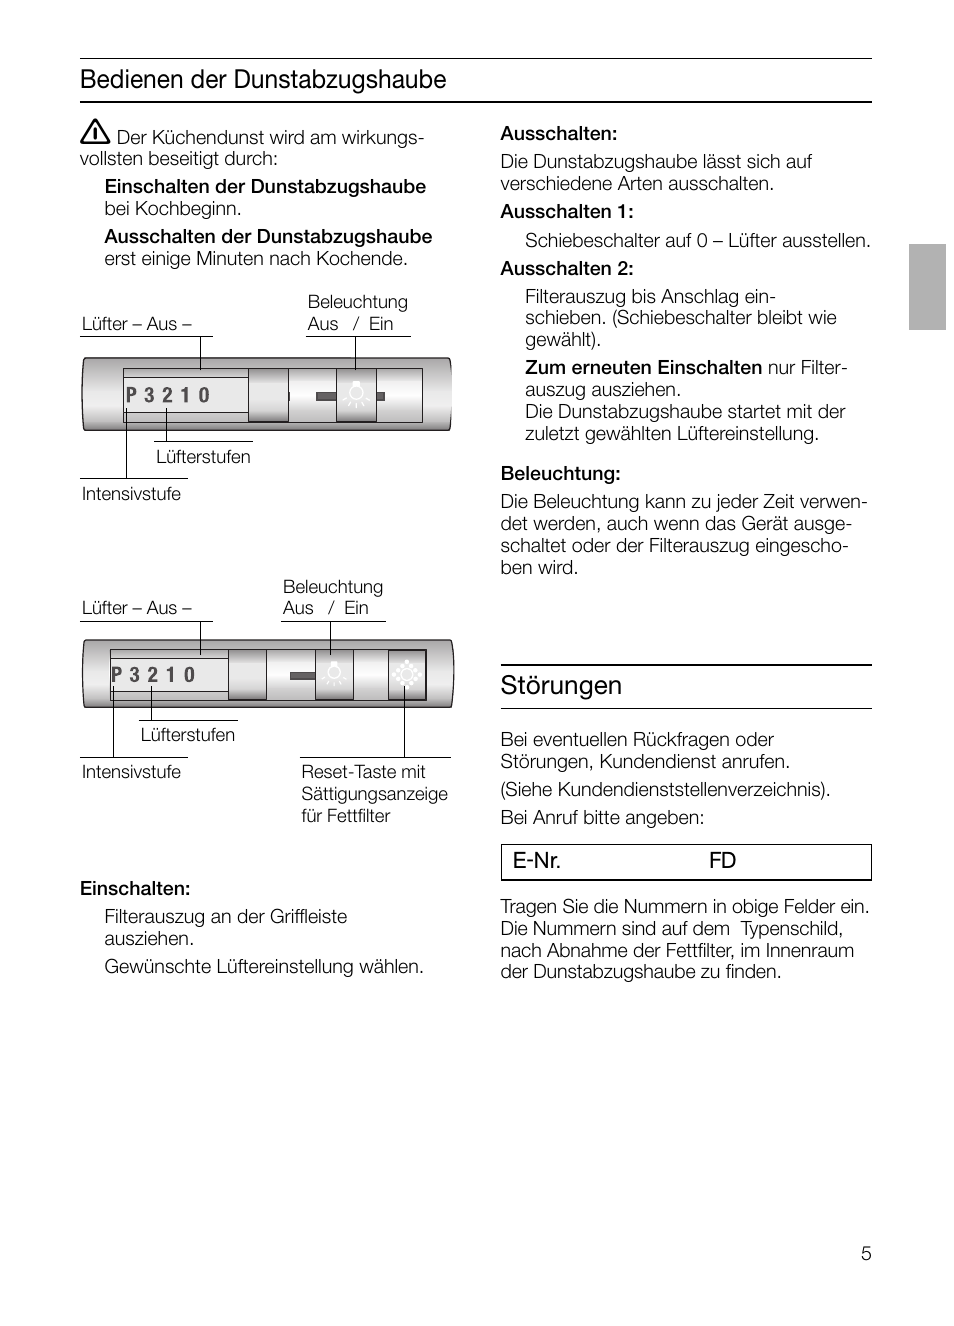 Bedienen der dunstabzugshaube, Störungen | Siemens LI44630 User Manual |  Page 5 / 100